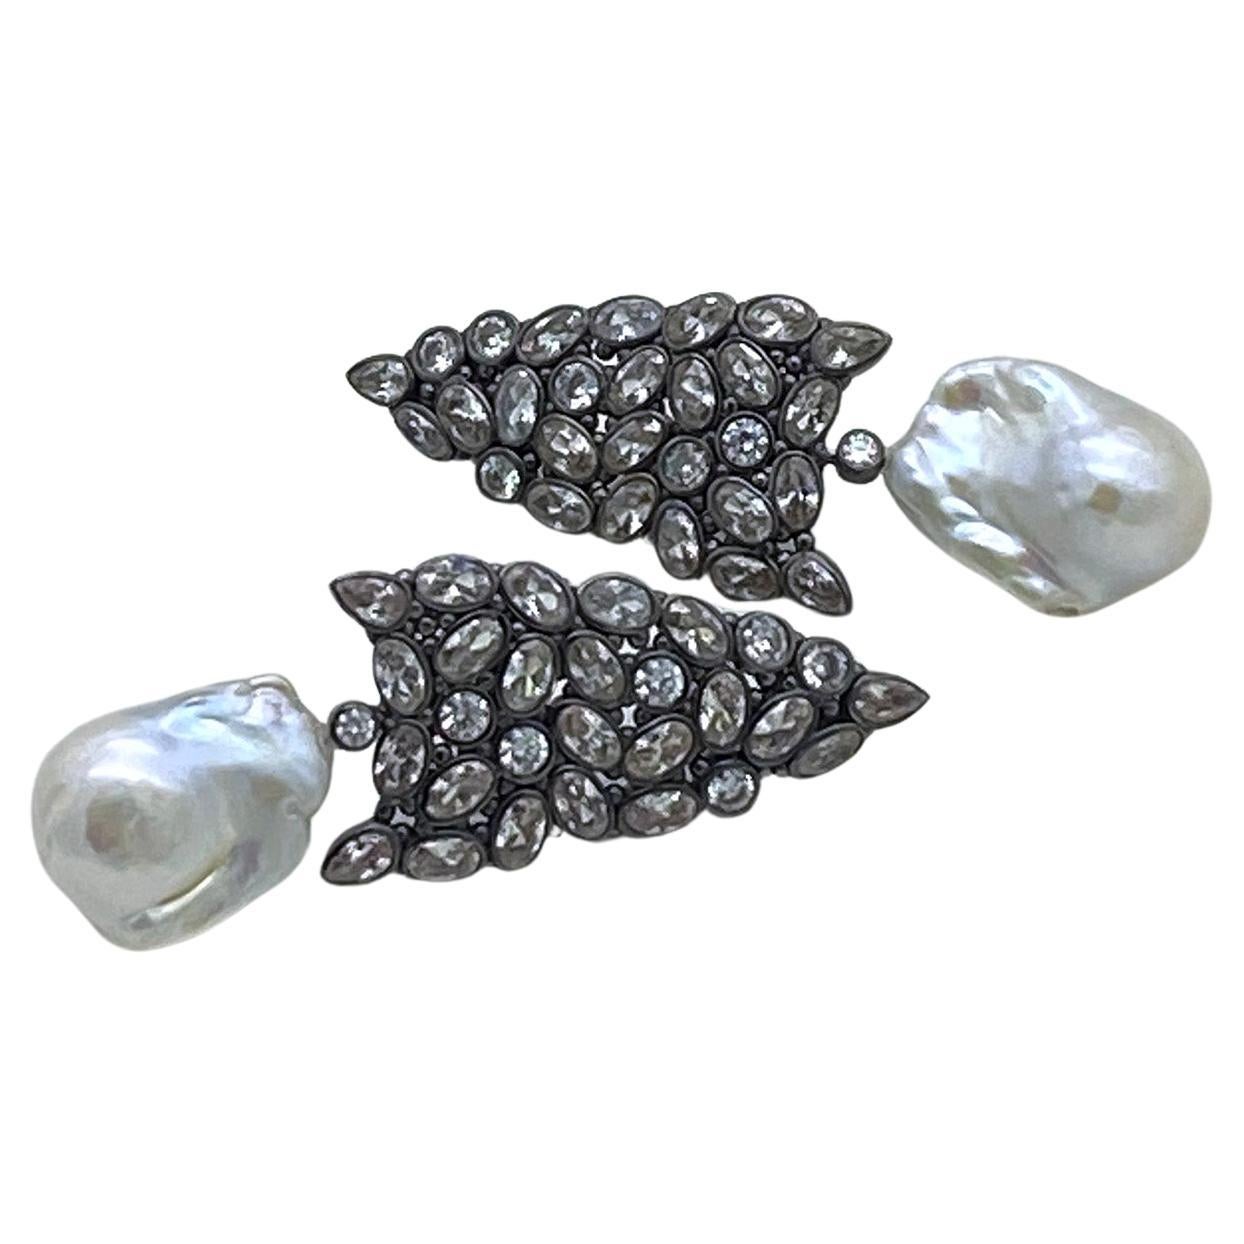 Dies ist ein Paar Barock Perle mit CZ Tropfen Ohrringe. Es gibt mehrere Formen von CZ-Clustern, die in schwarz vergoldete, pfeilförmige Ohrringe aus Sterlingsilber eingefasst sind, sowie Ohrringe mit je einer 18 x 22 mm großen Barockperle.

Unsere